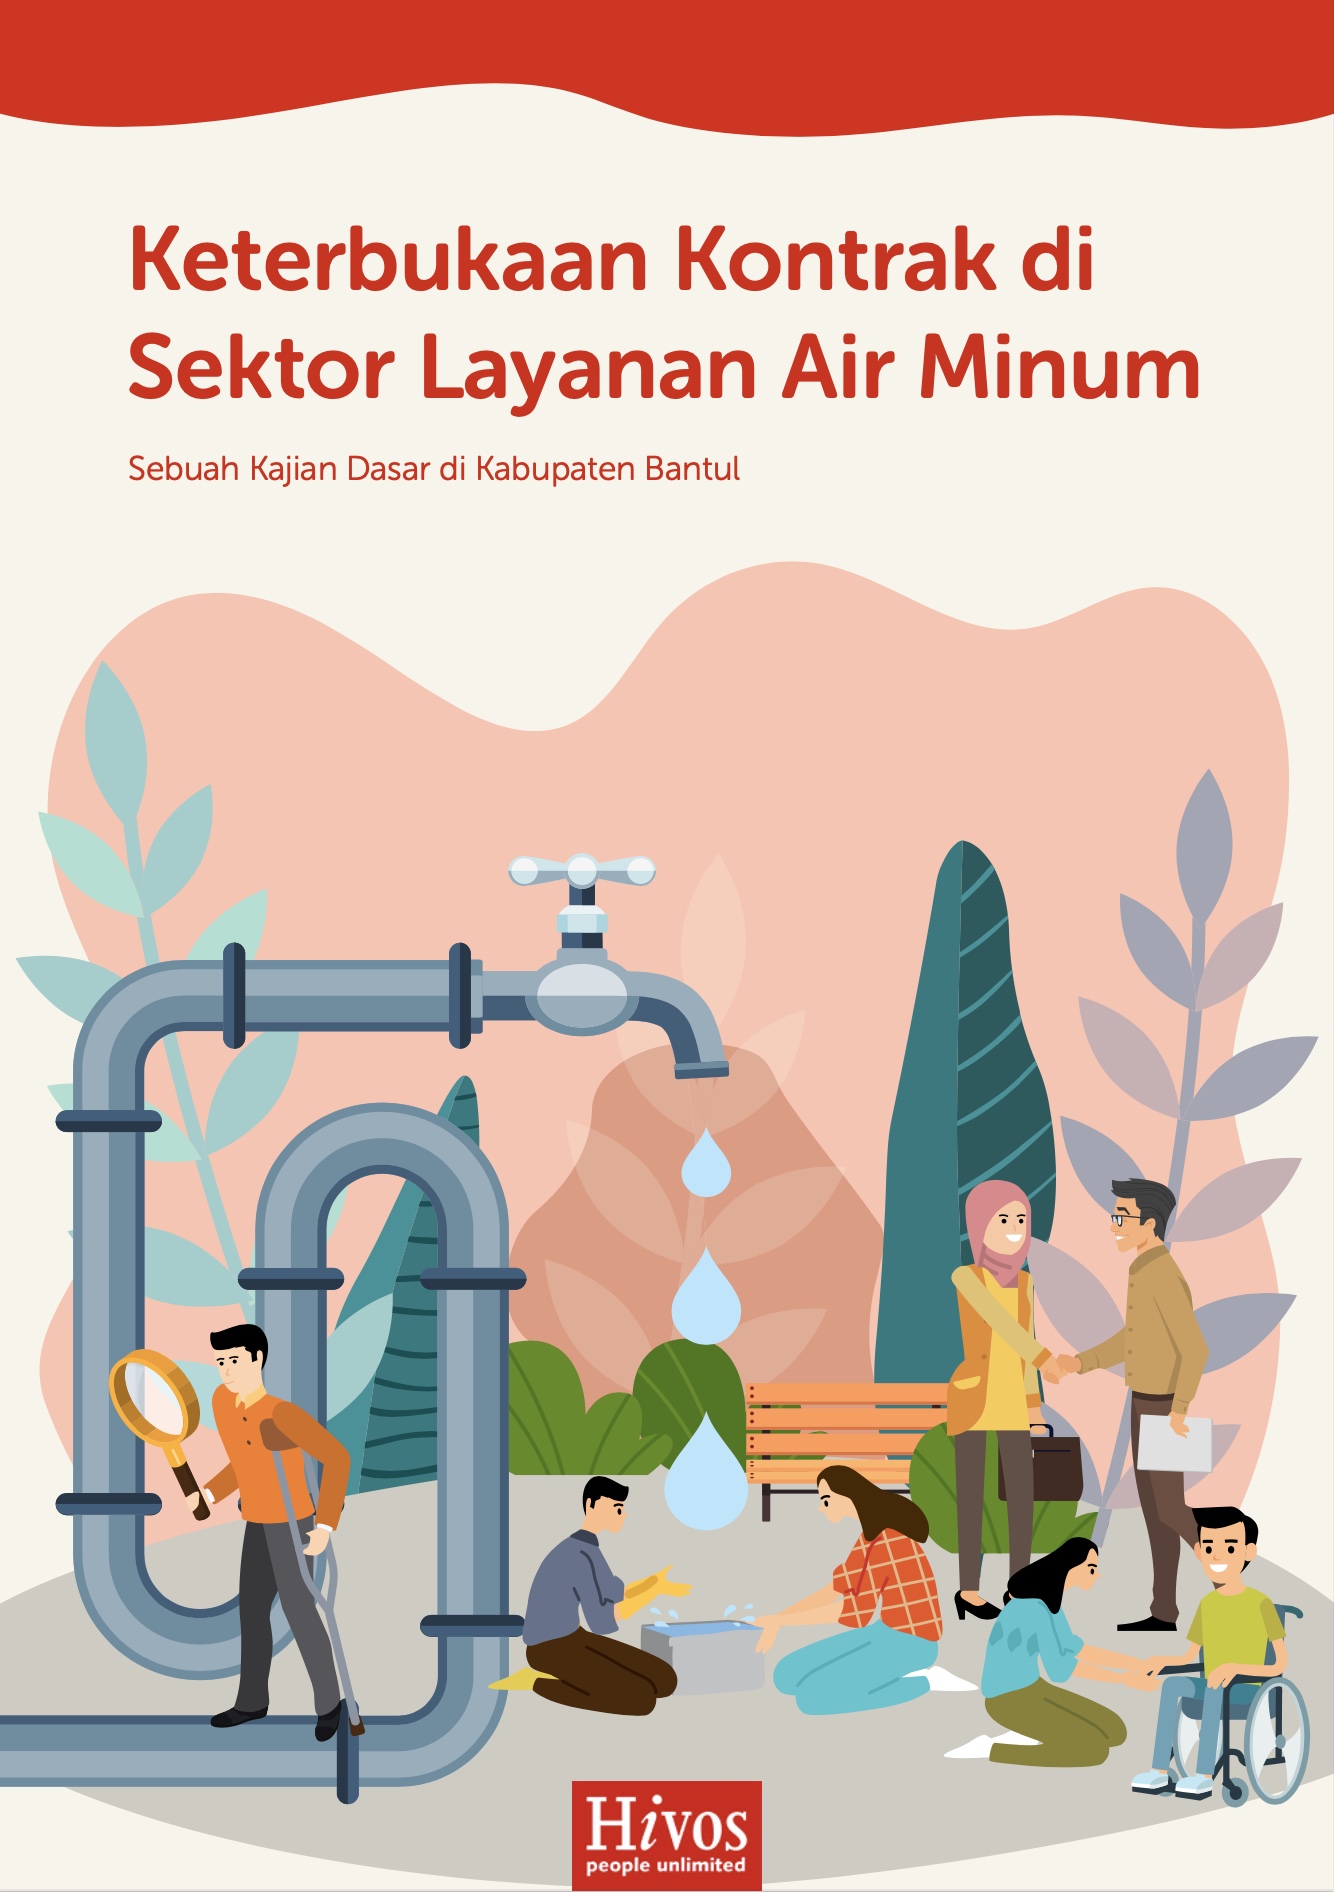 Keterbukaan Kontrak di Sektor Layanan Air Minum, Sebuah Kajian Dasar di Kabupaten Bantul